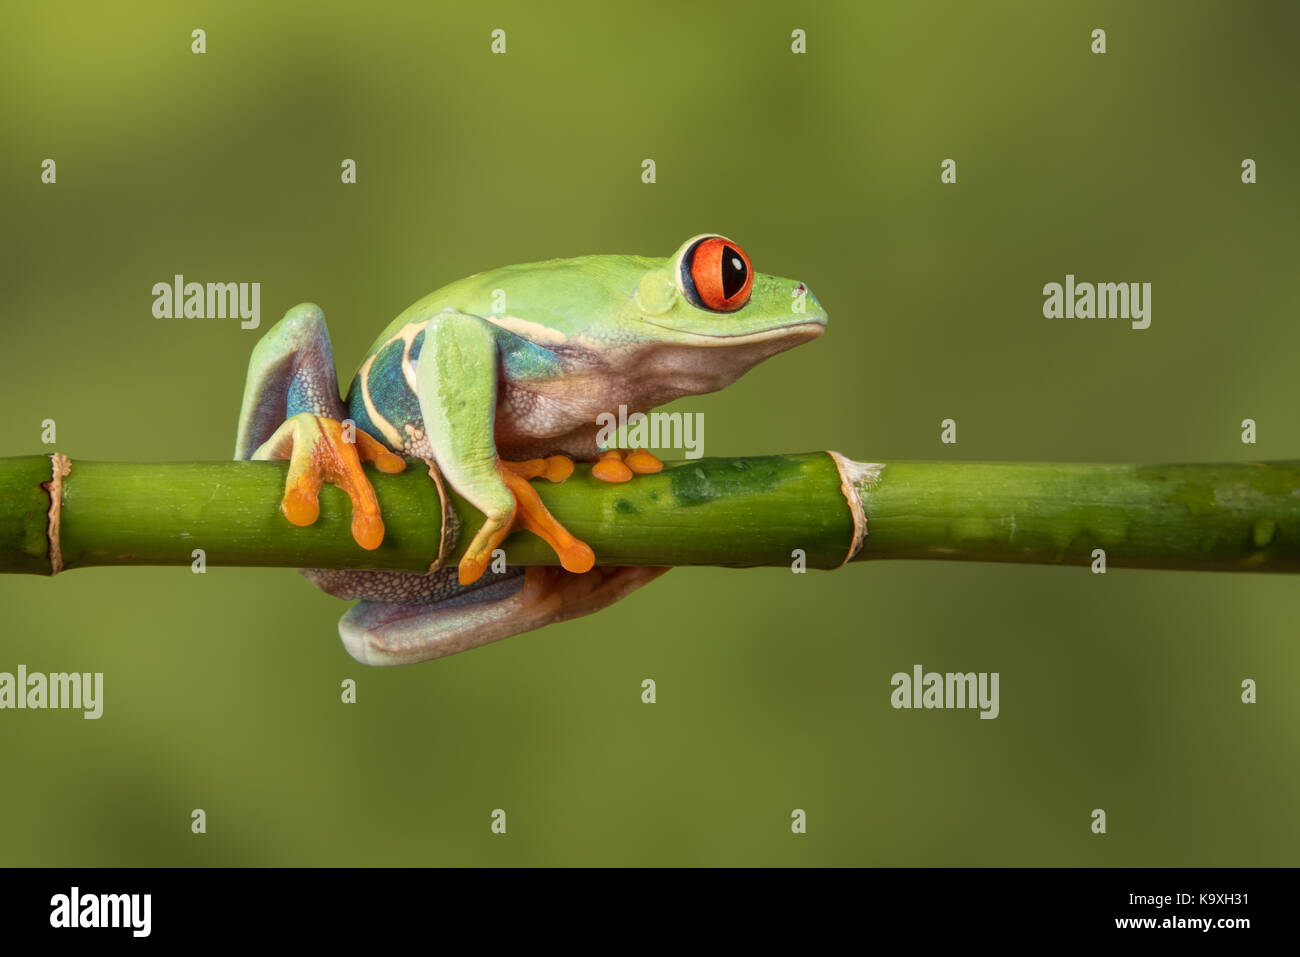 Côté fermer Voir le profil droit d'une grenouille arboricole aux yeux rouges en équilibre sur une canne de bambou regardant à droite Banque D'Images